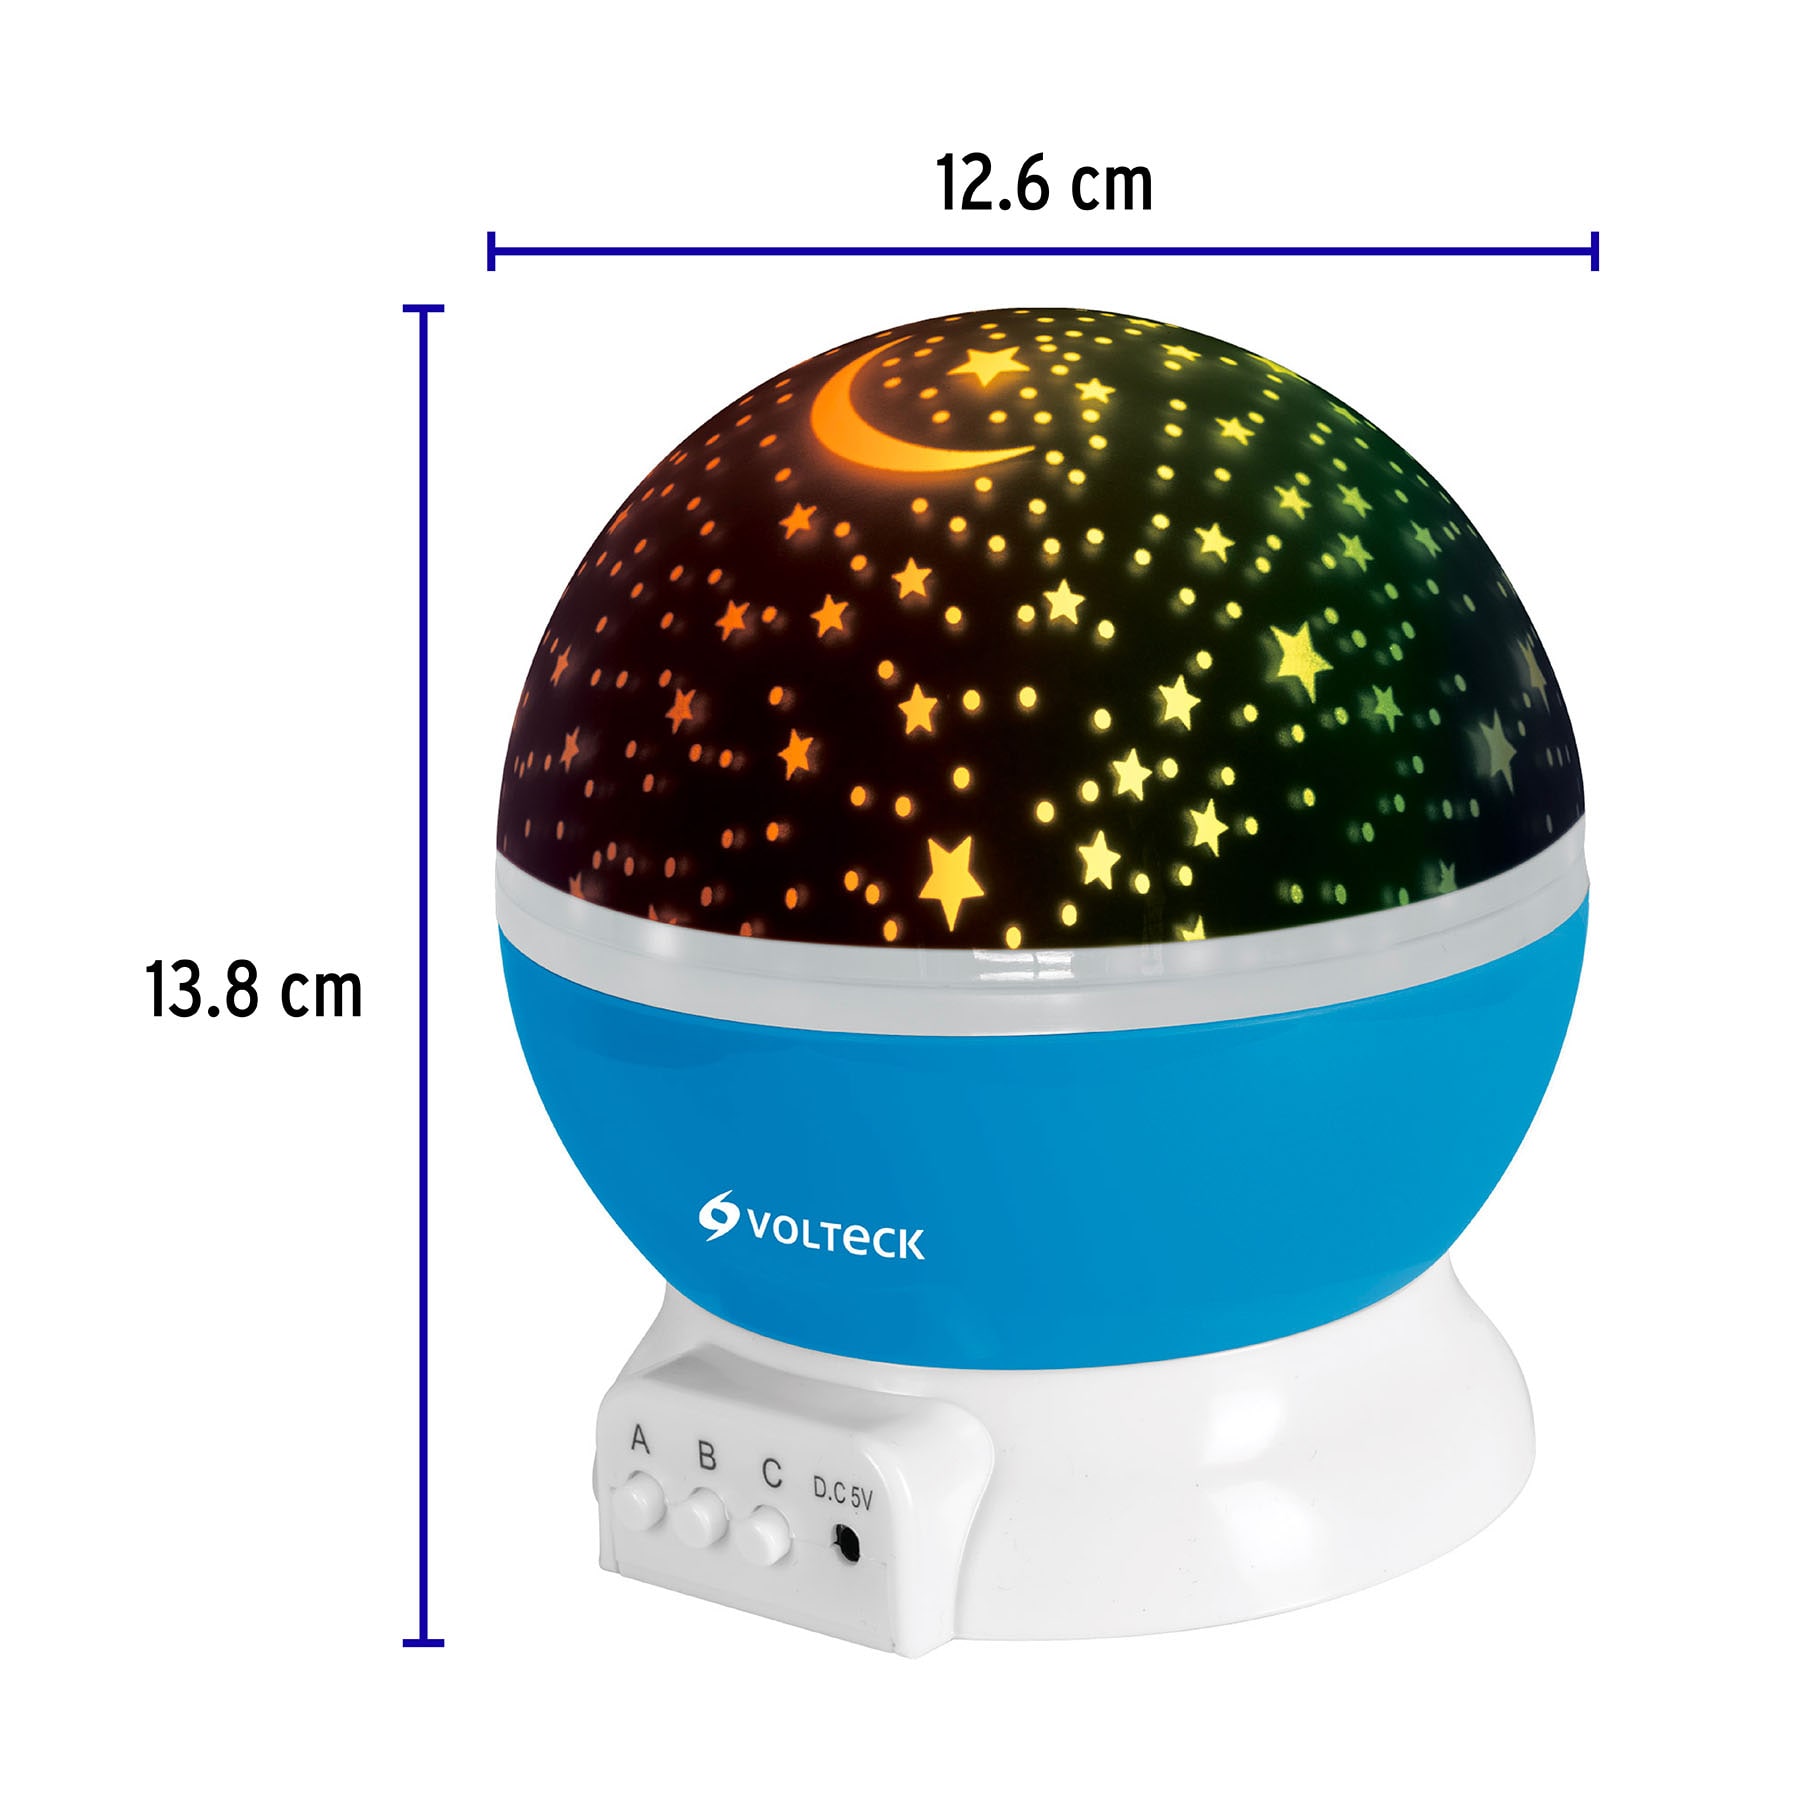 ▷ Chollo Proyector LED de estrellas Moredig por sólo 17,84€ con doble cupón  descuento (-50%)